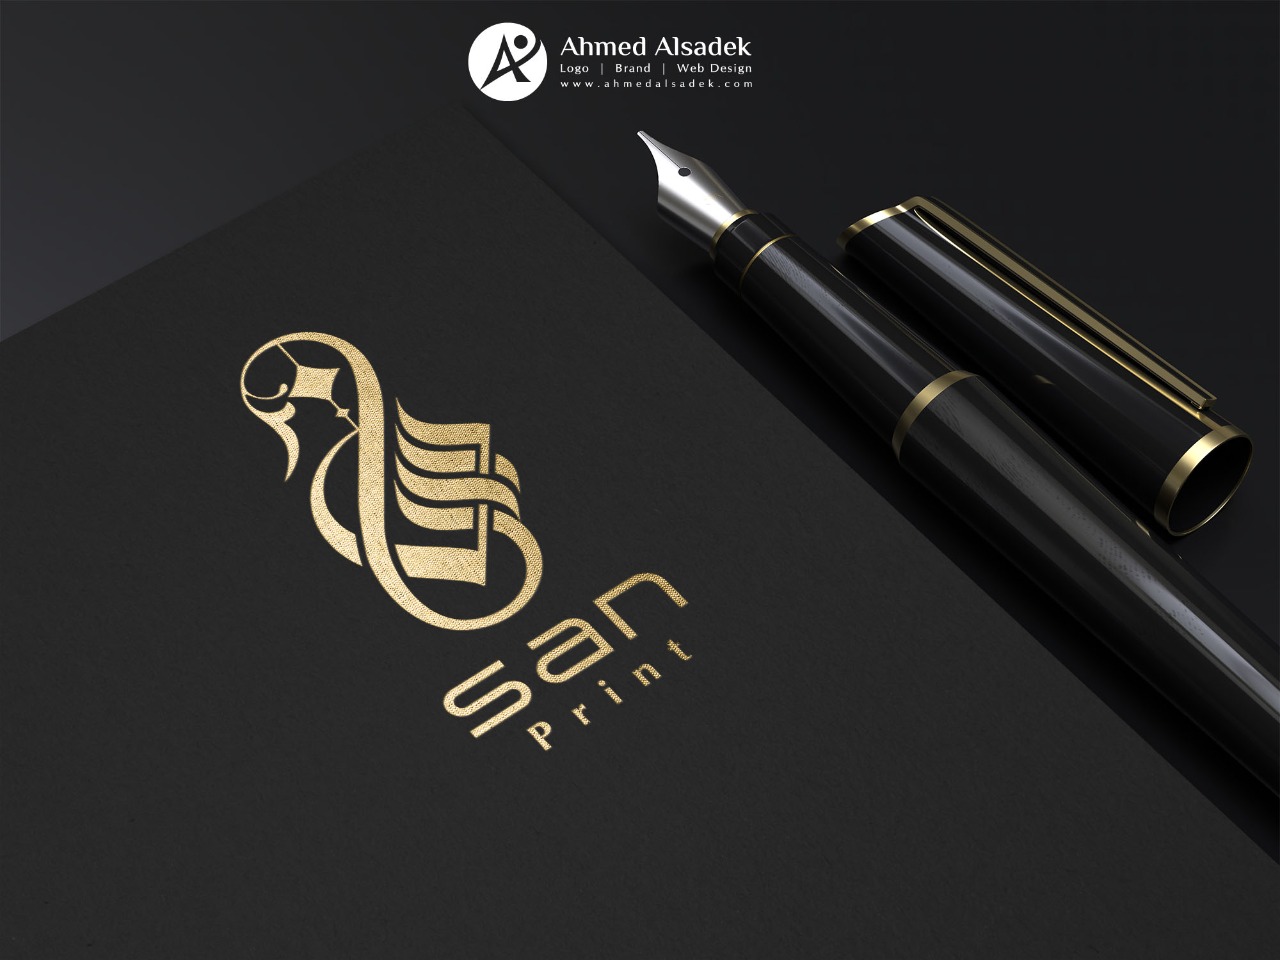 تصميم شعار شركة سان للديكور في المدينة المنورة السعودية 8